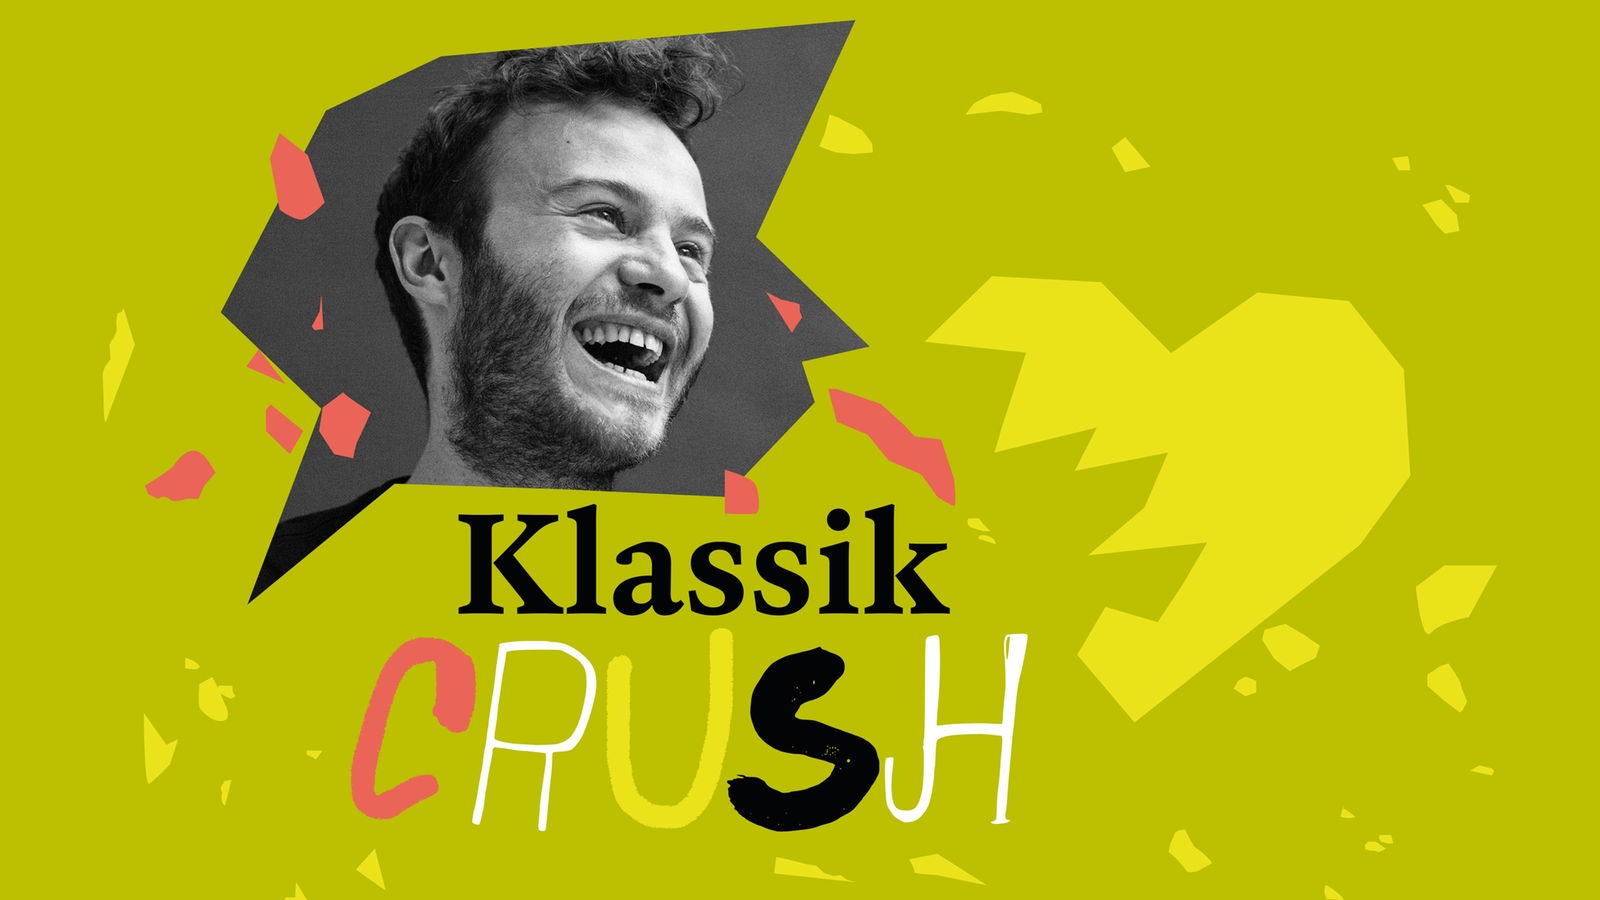 Podcast-Cover mit einem lachenden jungen Mann und dem Schriftzug "Klassik Crush"